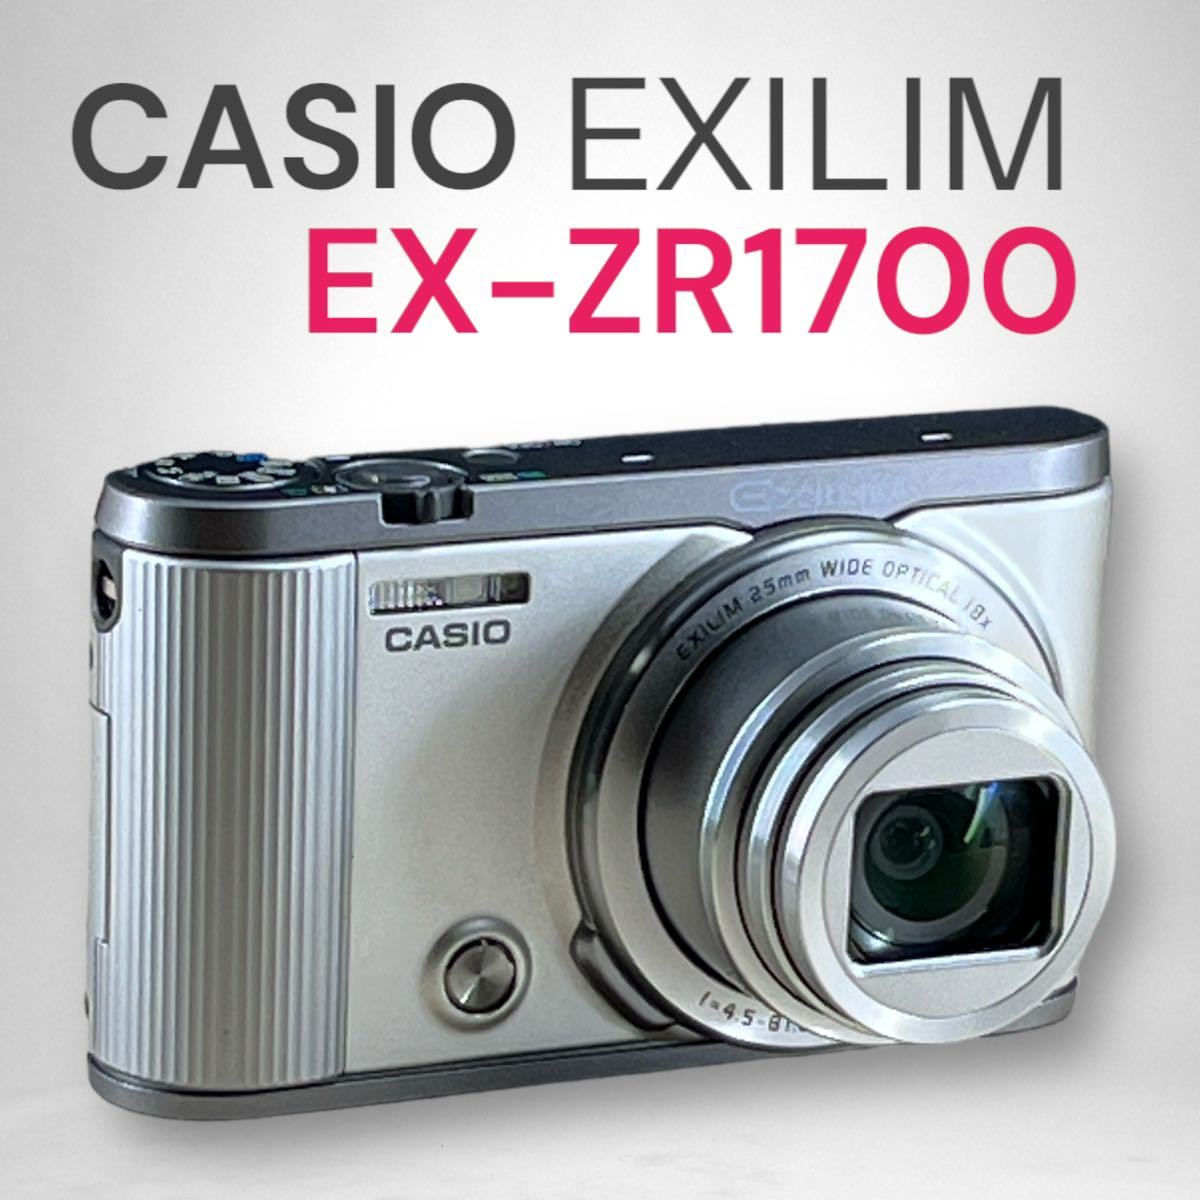 【カシオプレミアムコンパクトカメラ】EXILIM EX-ZR1700(S) 25-450mmレンズ 1610万画素 自撮りチルト液晶 Wi-Fi搭載 完全動作美品_画像1